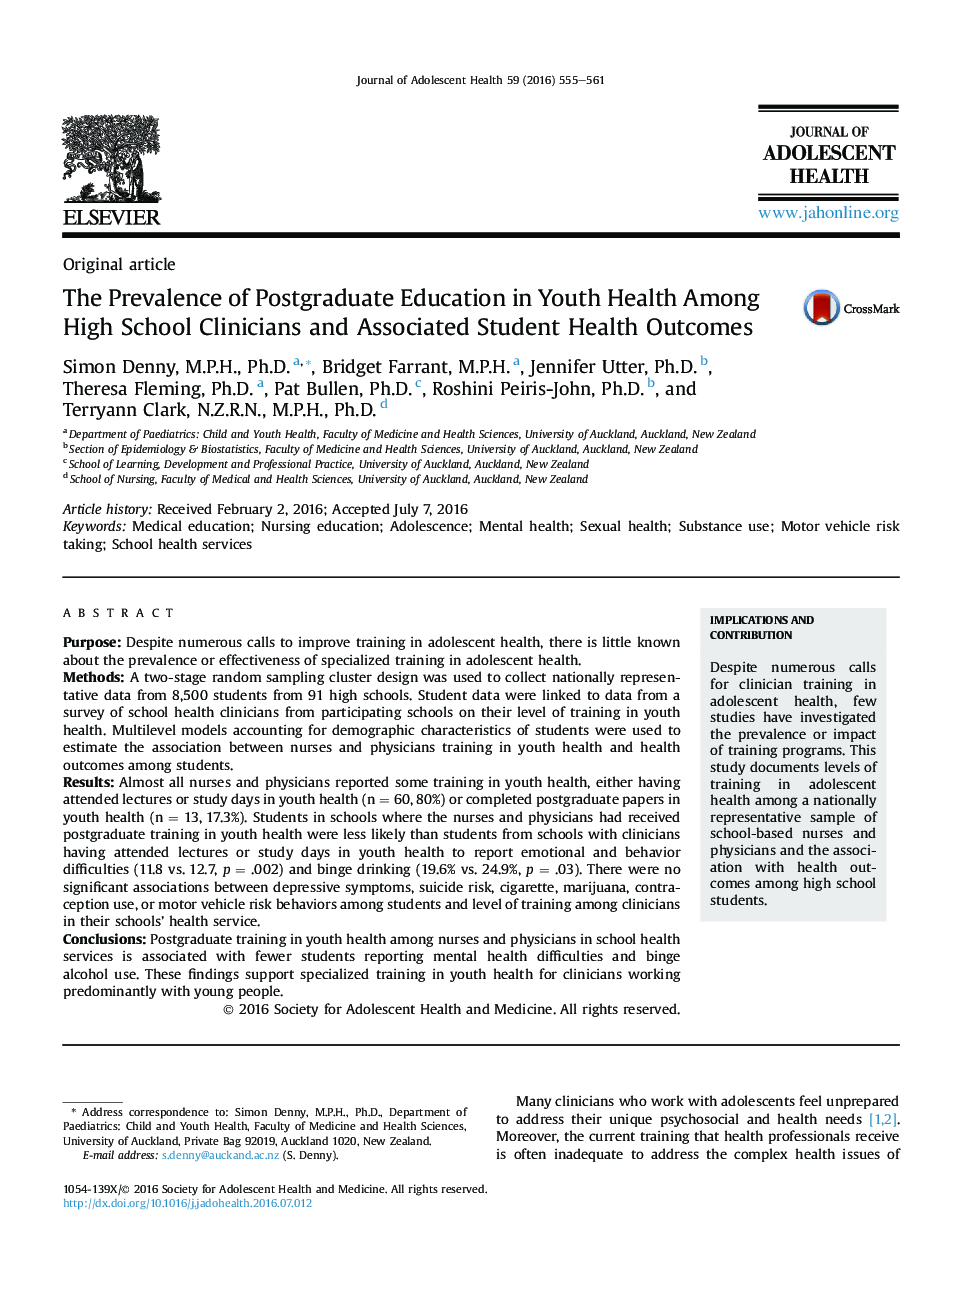 شیوع تحصیلات تکمیلی در سلامت جوانان در کلینیک های دبیرستان و نتایج بهداشتی دانشجویان مرتبط 